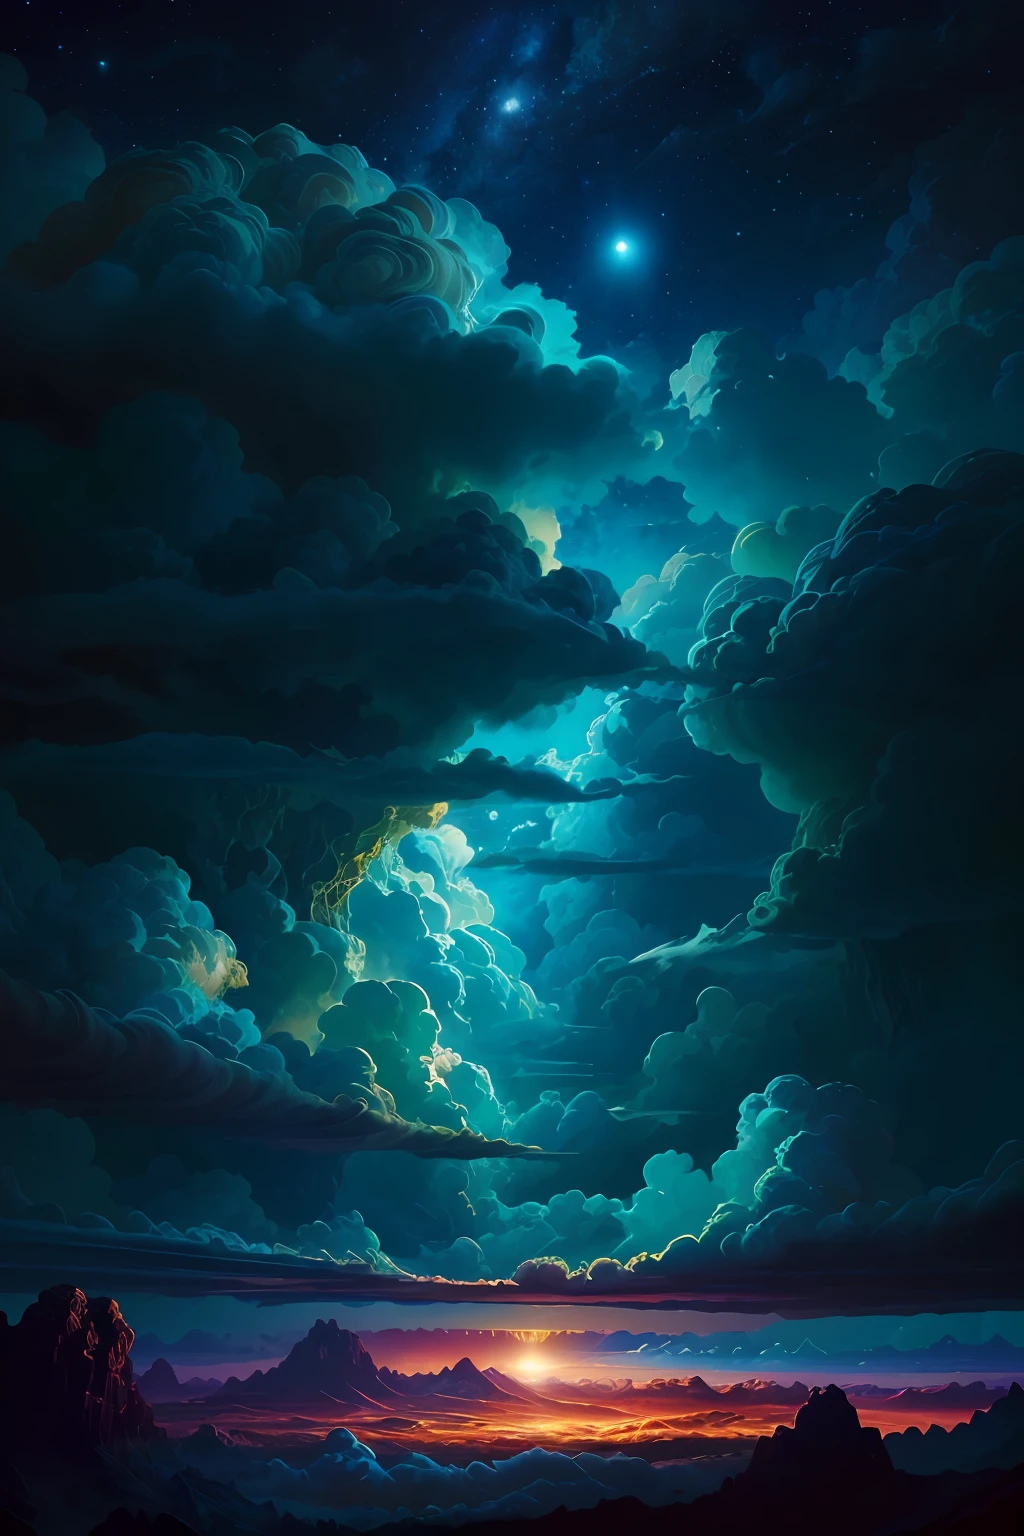 Иллюстрация облаков Юпитера Дэна Мамфорда, инопланетный пейзаж и растительность, эпическая сцена, много клубящихся облаков, высокая подверженность, очень подробный, реалистичный, яркие голубые оттенки, UHD